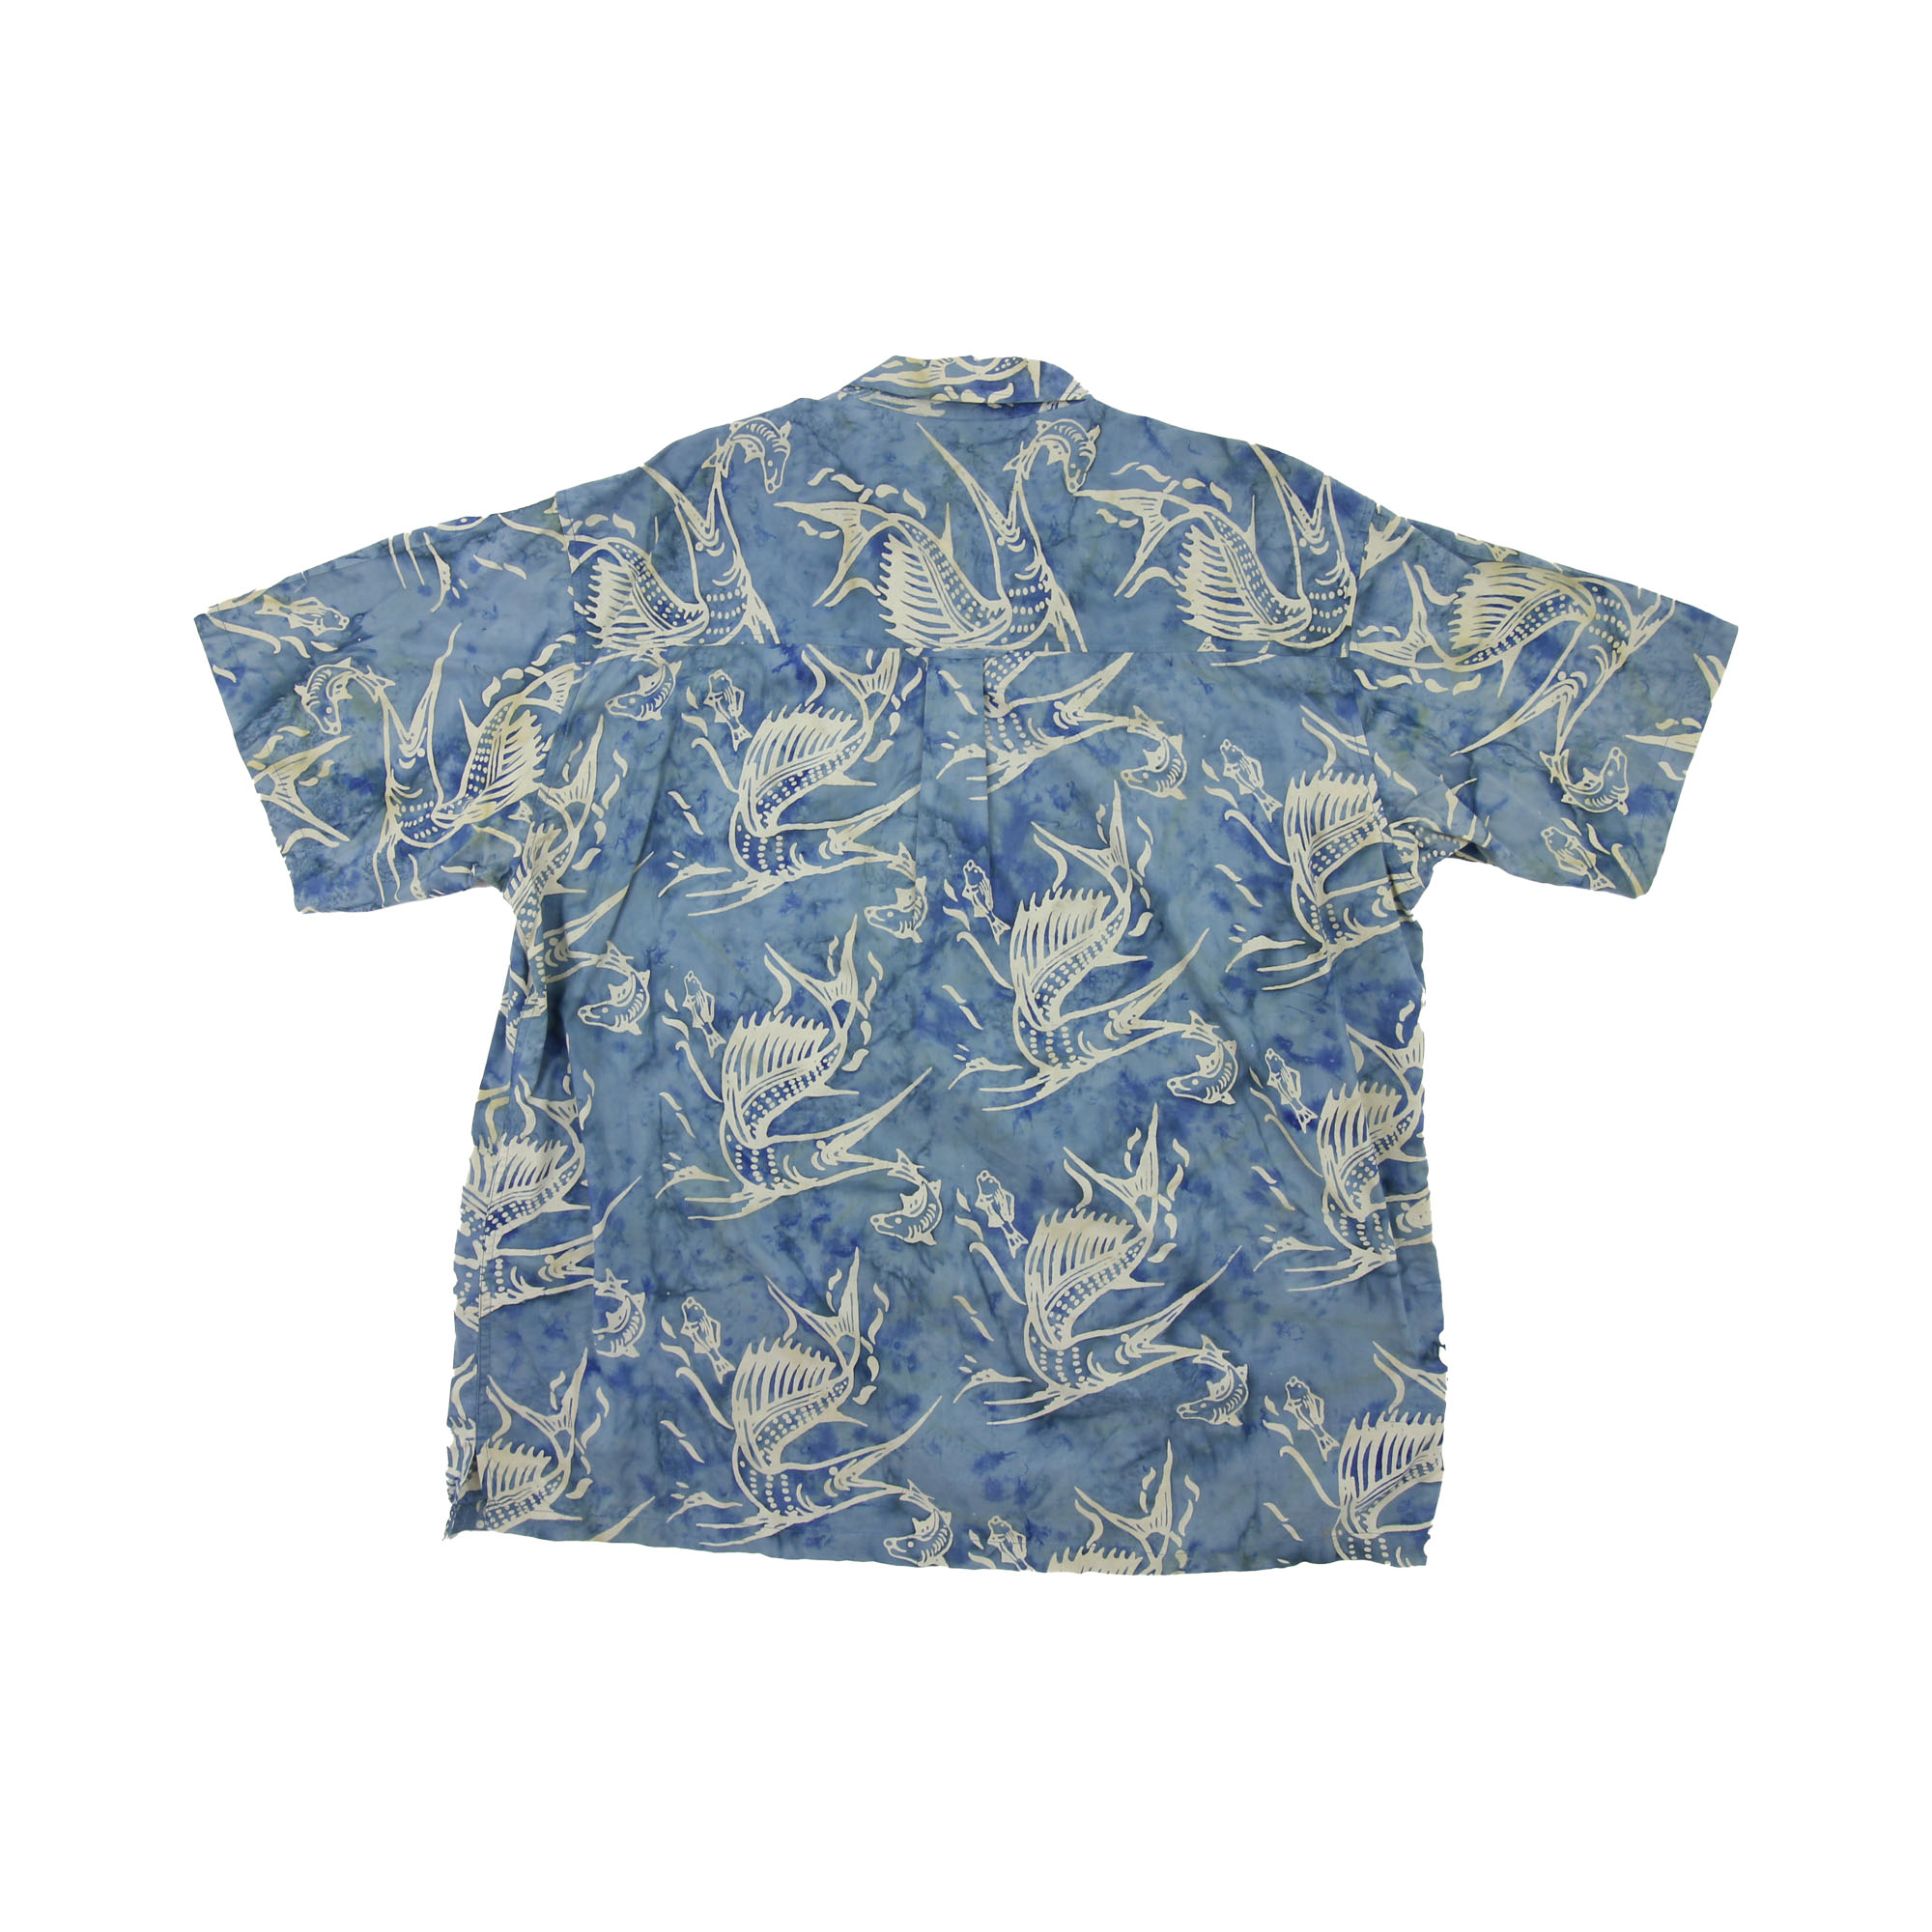 Newport Blue Thin Short Sleeve Shirt -  XL